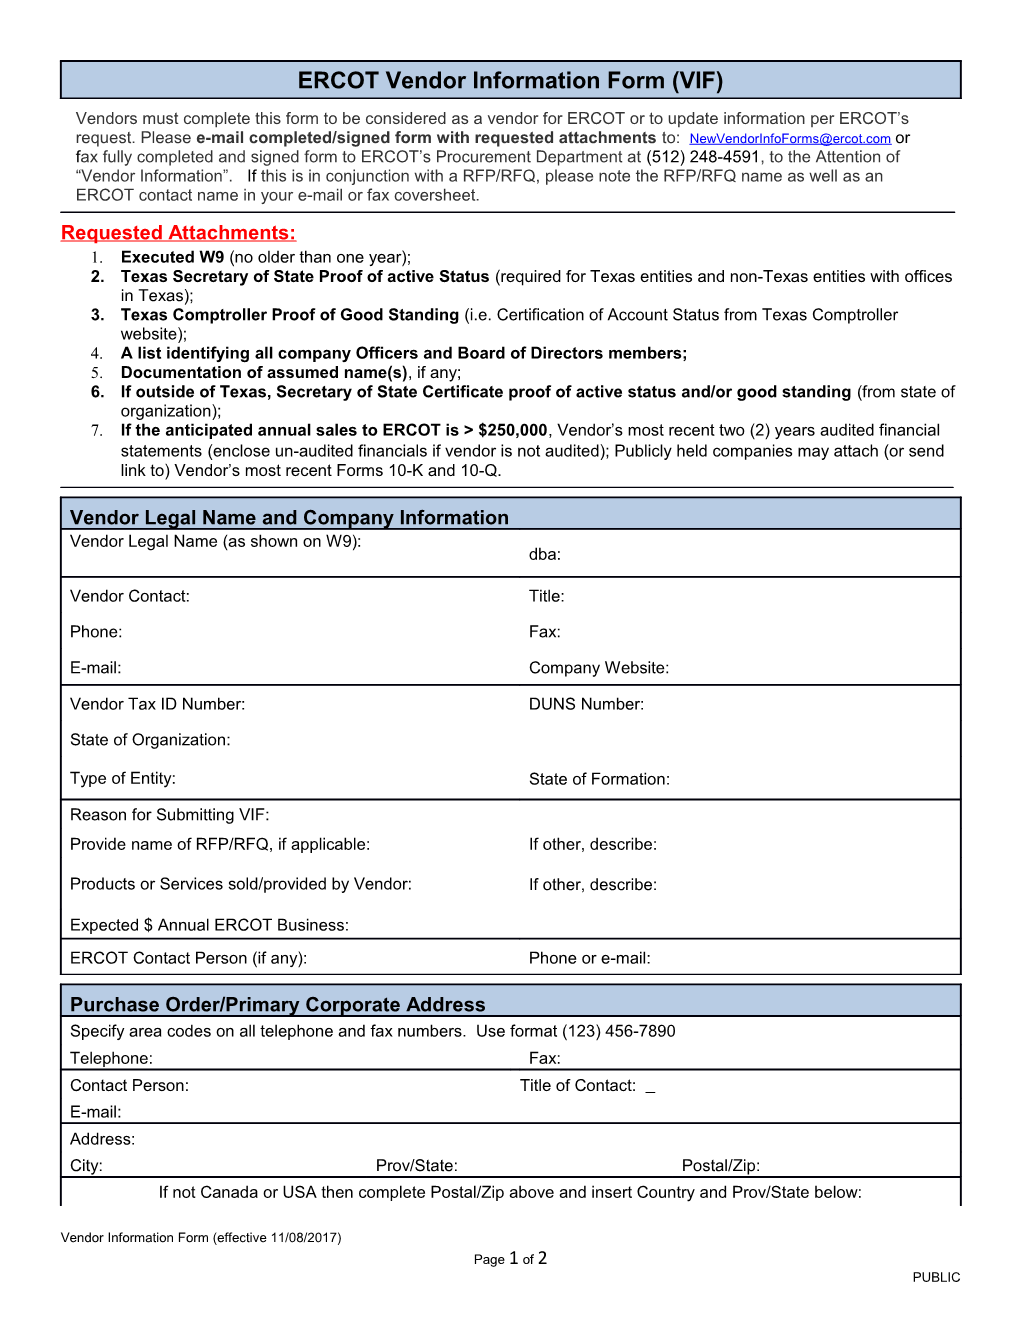 Form 2.1.1 Vendor Information Form